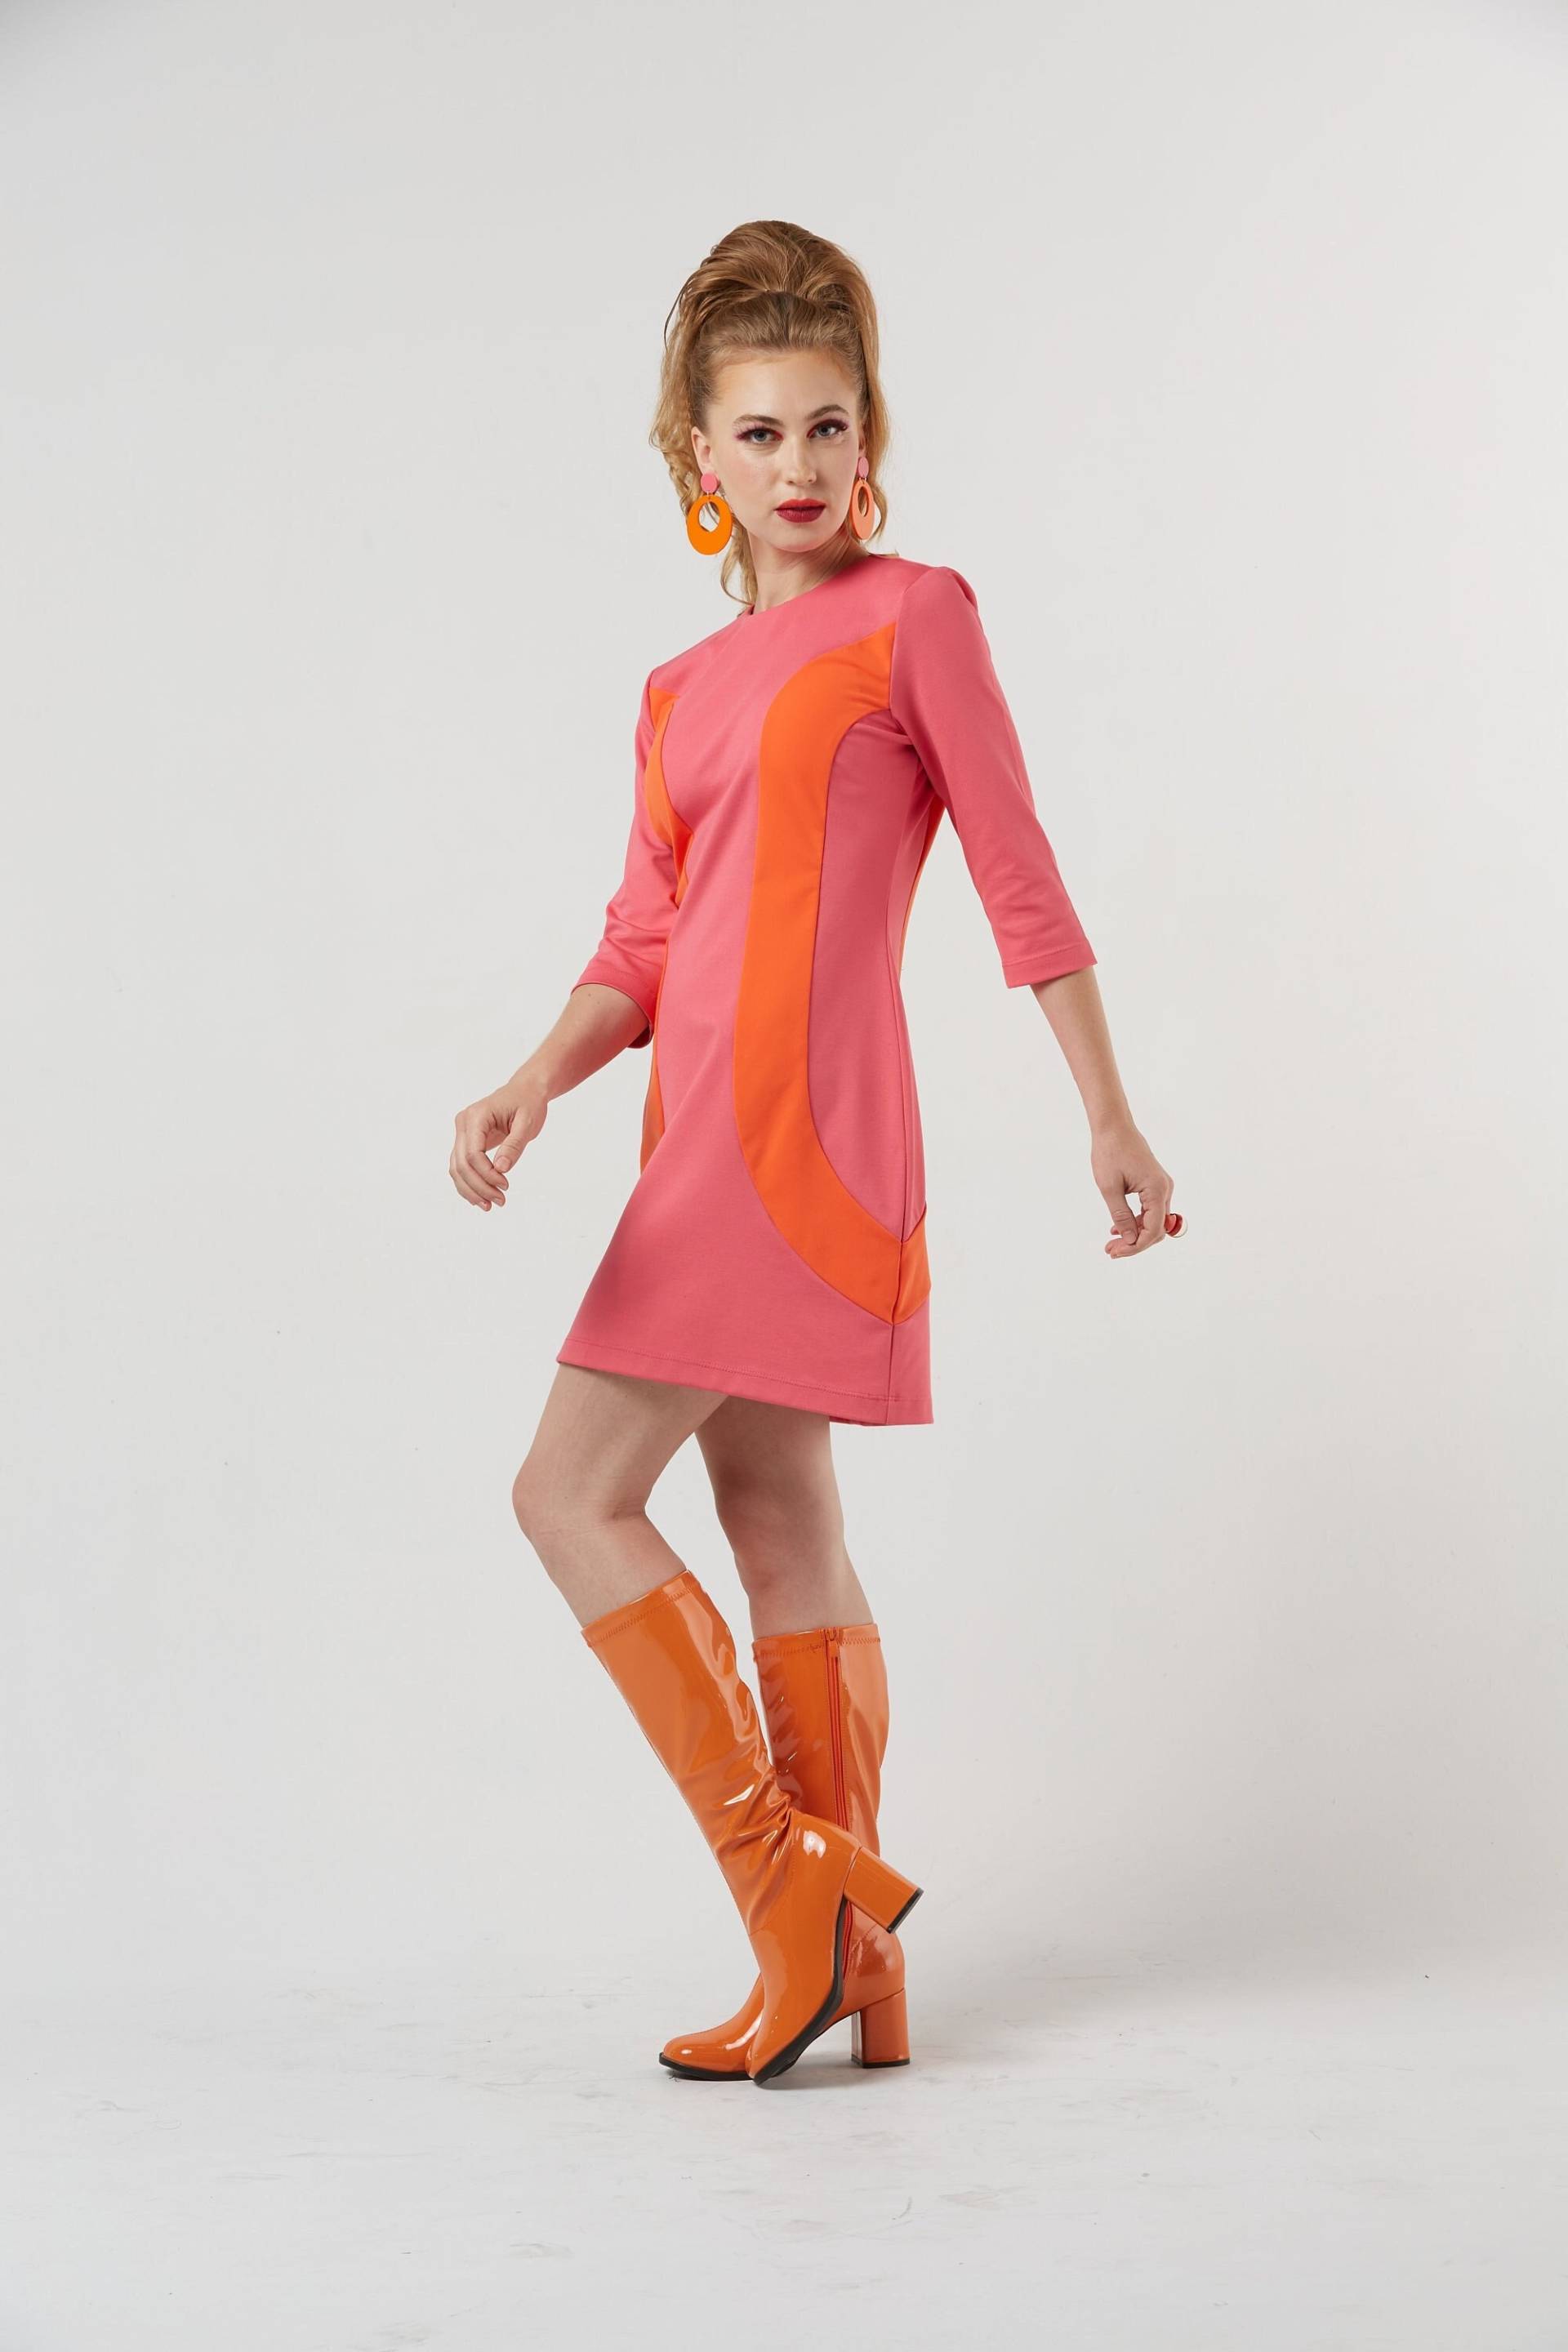 Peggy 1960Er Jahre Mod Space Age Inspiriert Abstrakt Pink & Orange 3/4 Ärmel Mini Punta Stricken Etuikleid Made in Los Angeles Xs-Xl von GimmickbyRachel